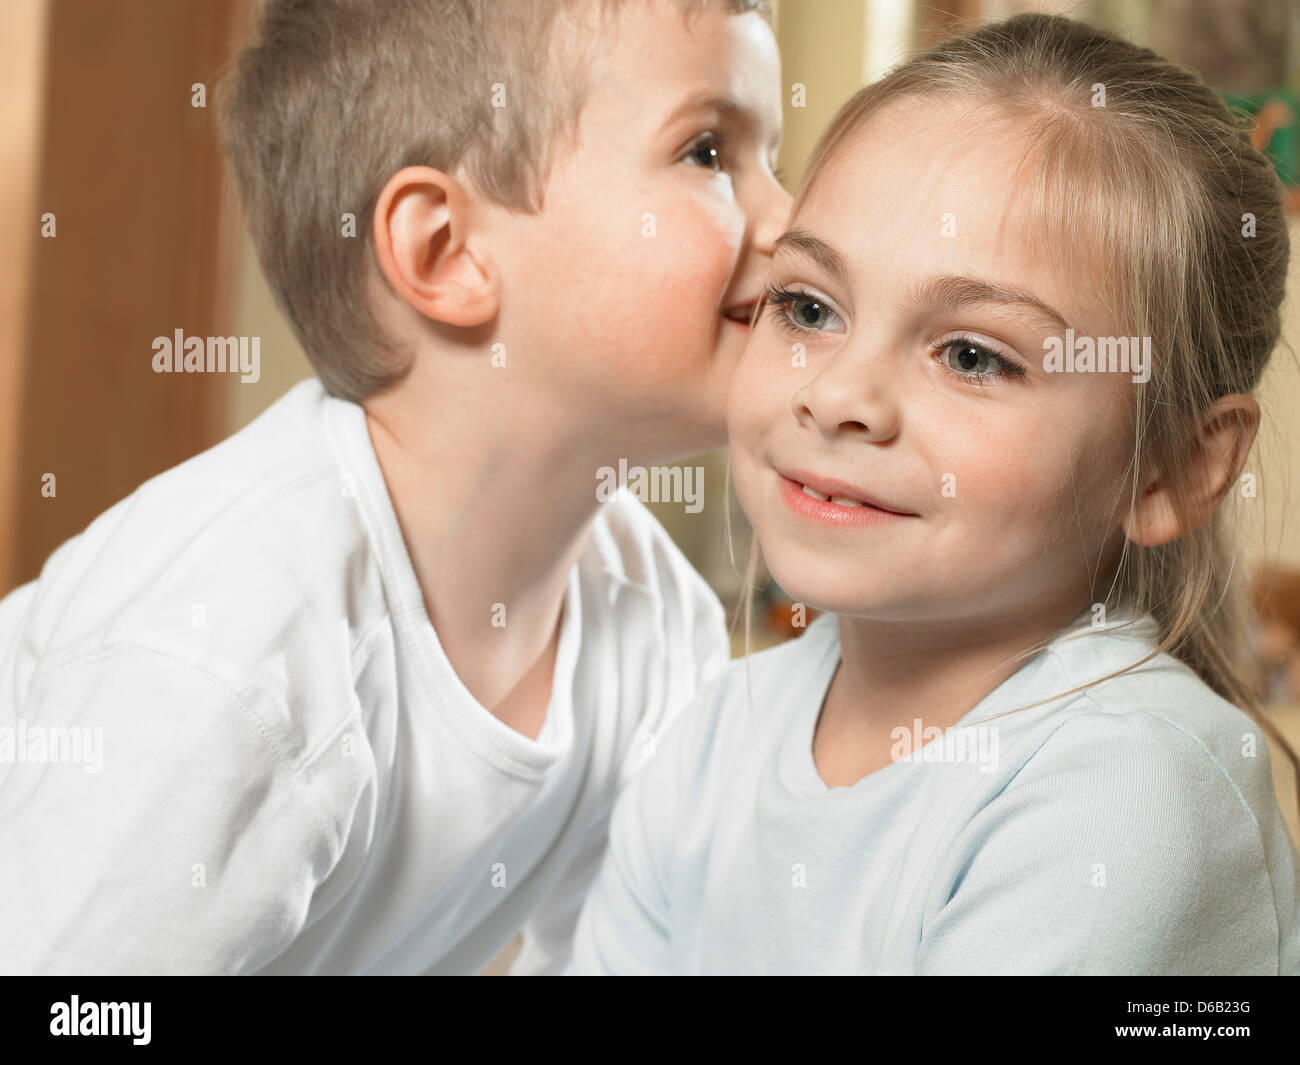 Boy whispering in girls ear Stock Photo